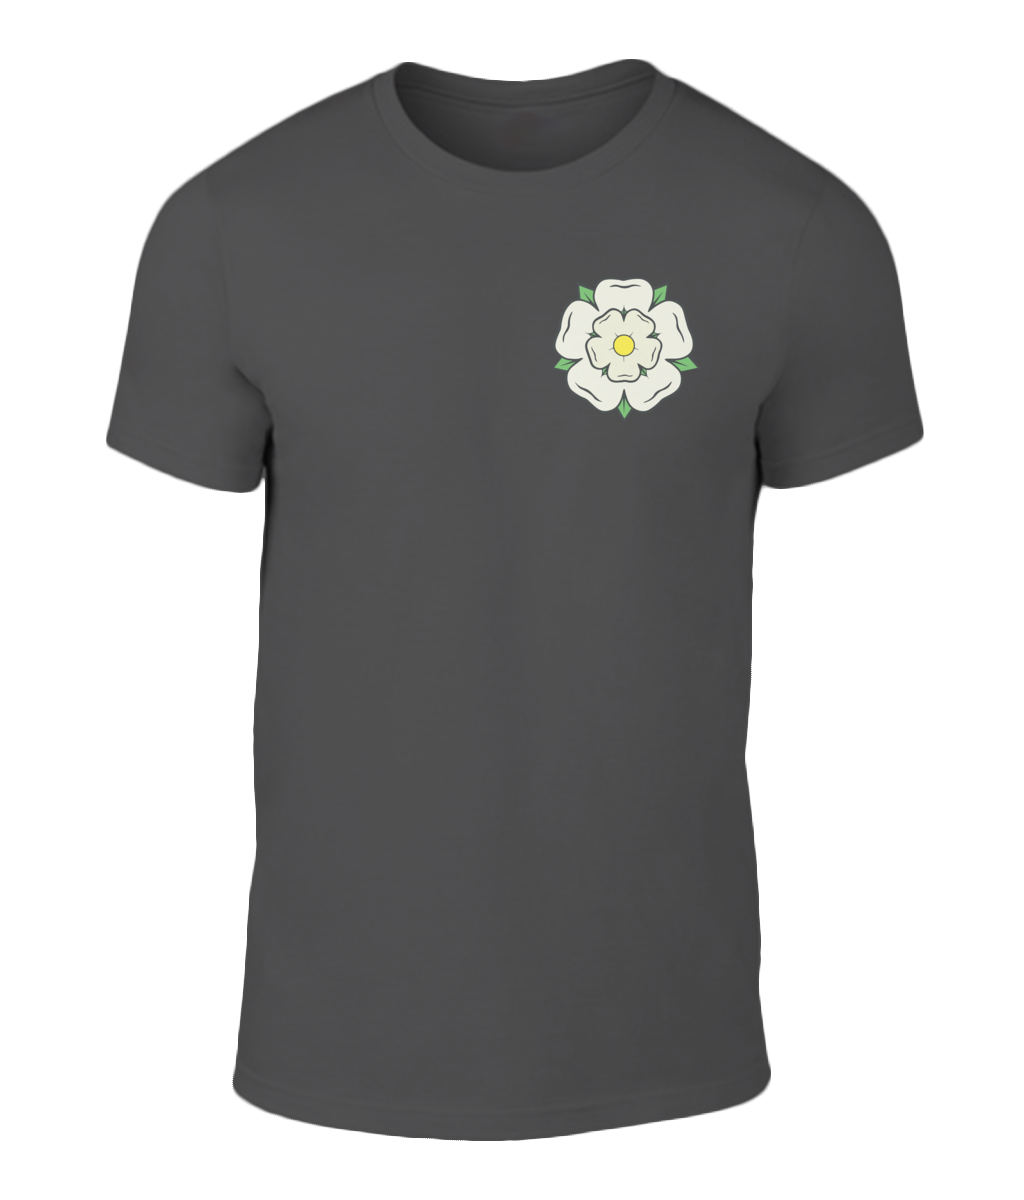 Yorkshire White Rose Over Heart T-Shirt - HipHatter